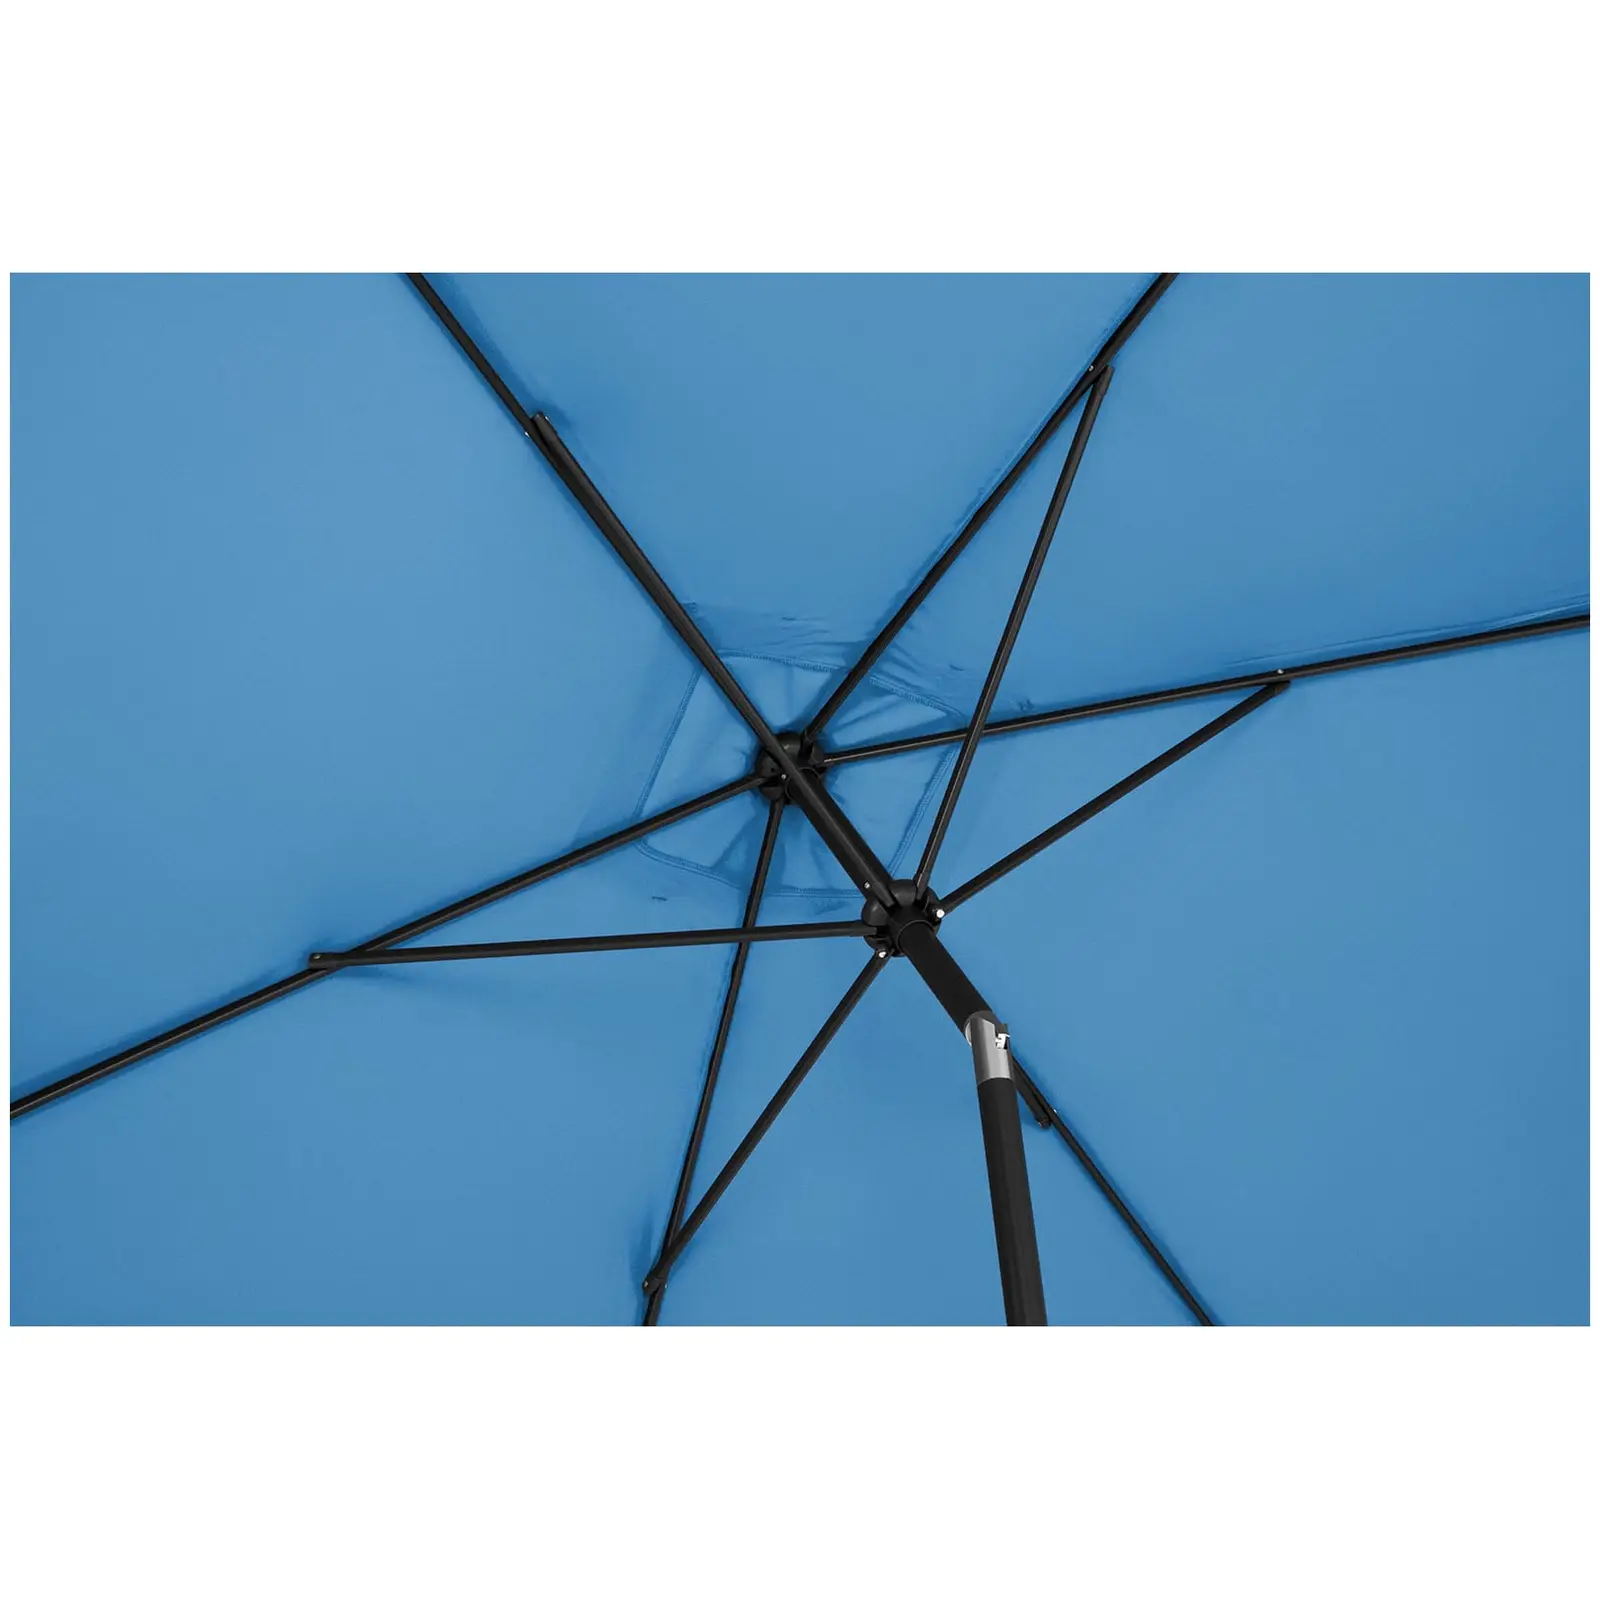 Голям външен чадър - син - правоъгълен - 200 x 300 см - накланящ се